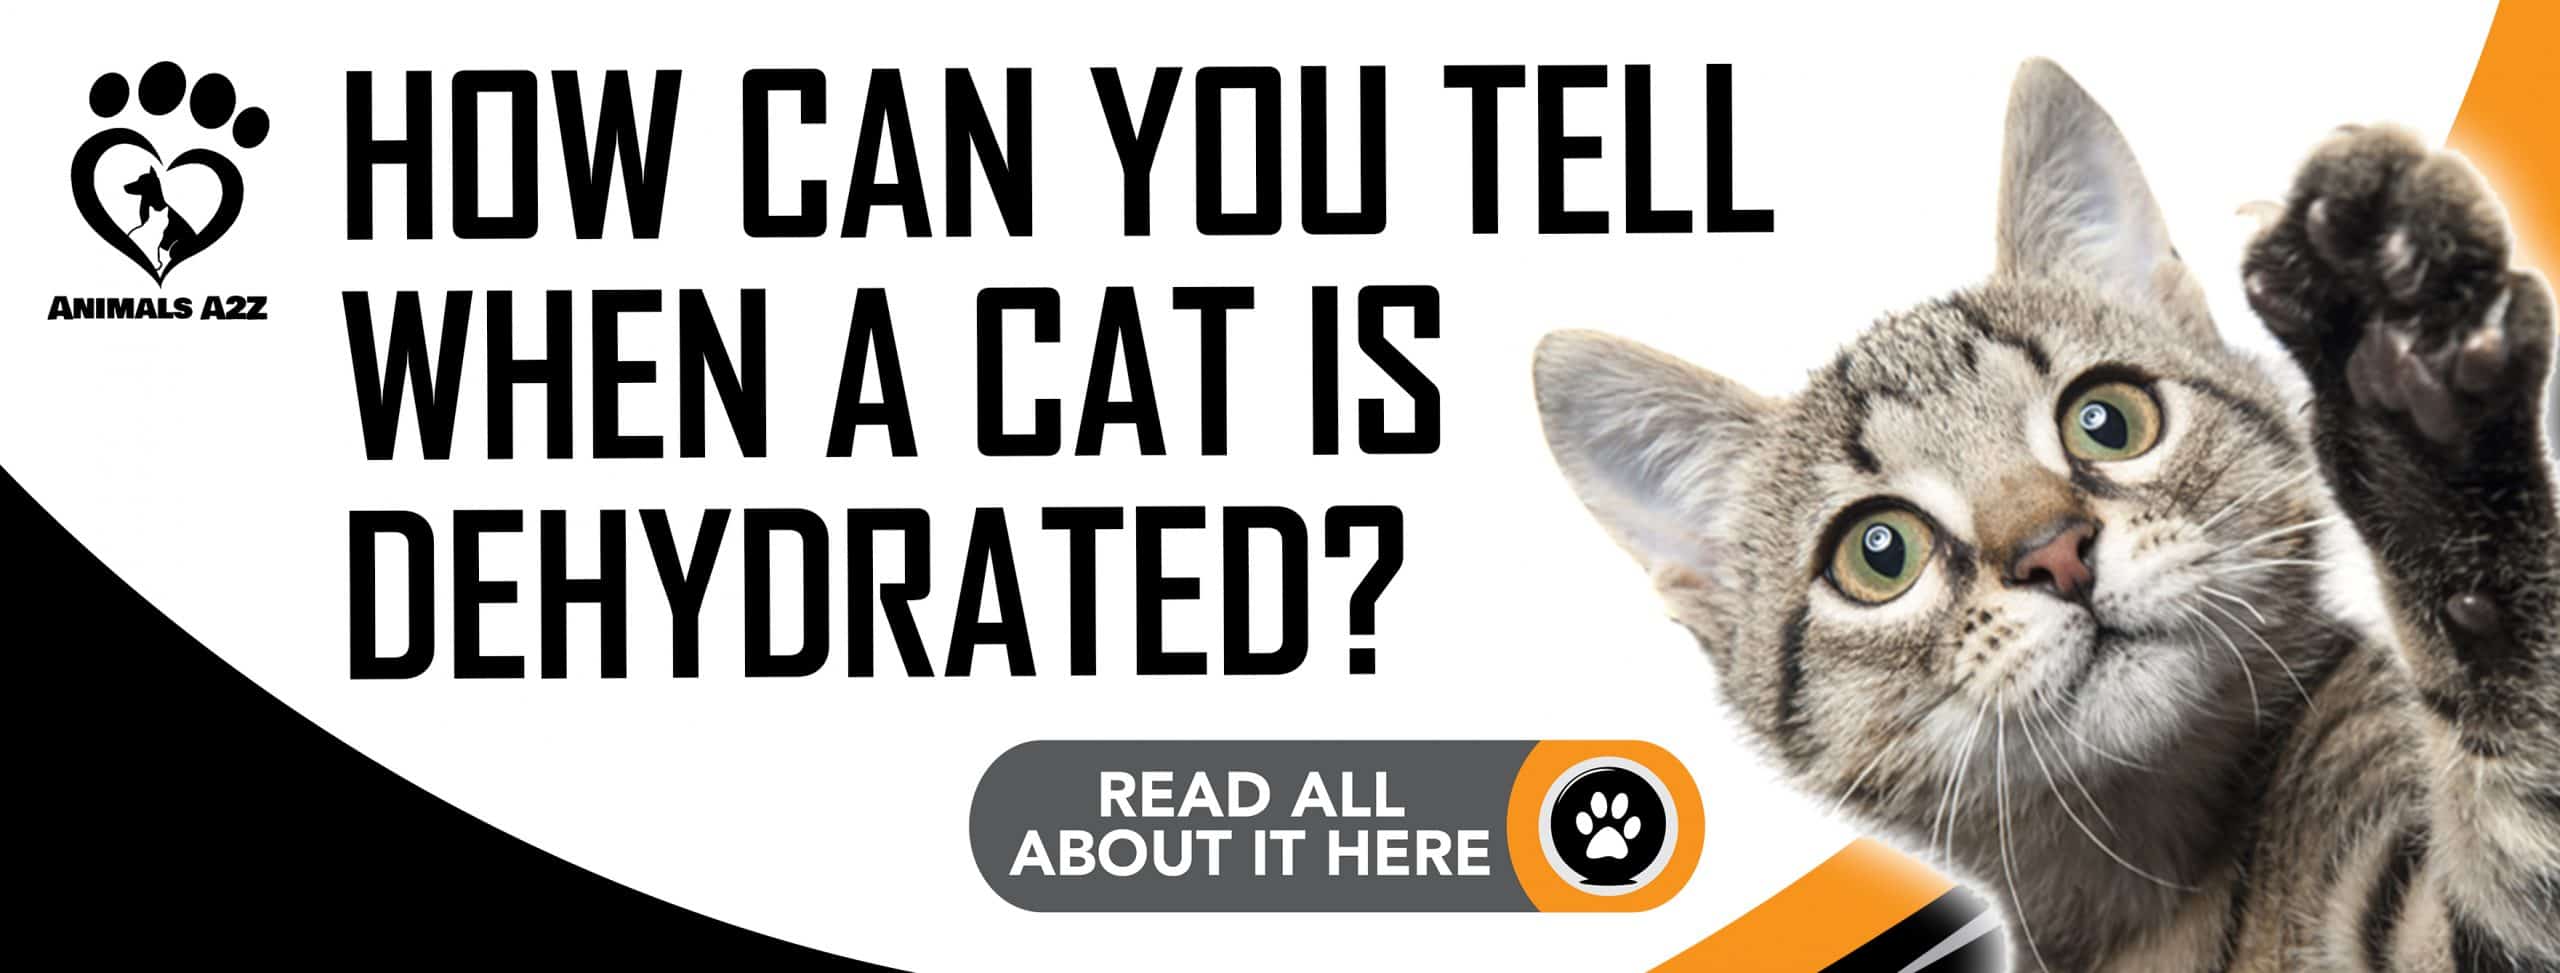 Wie können Sie feststellen, ob eine Katze dehydriert ist?